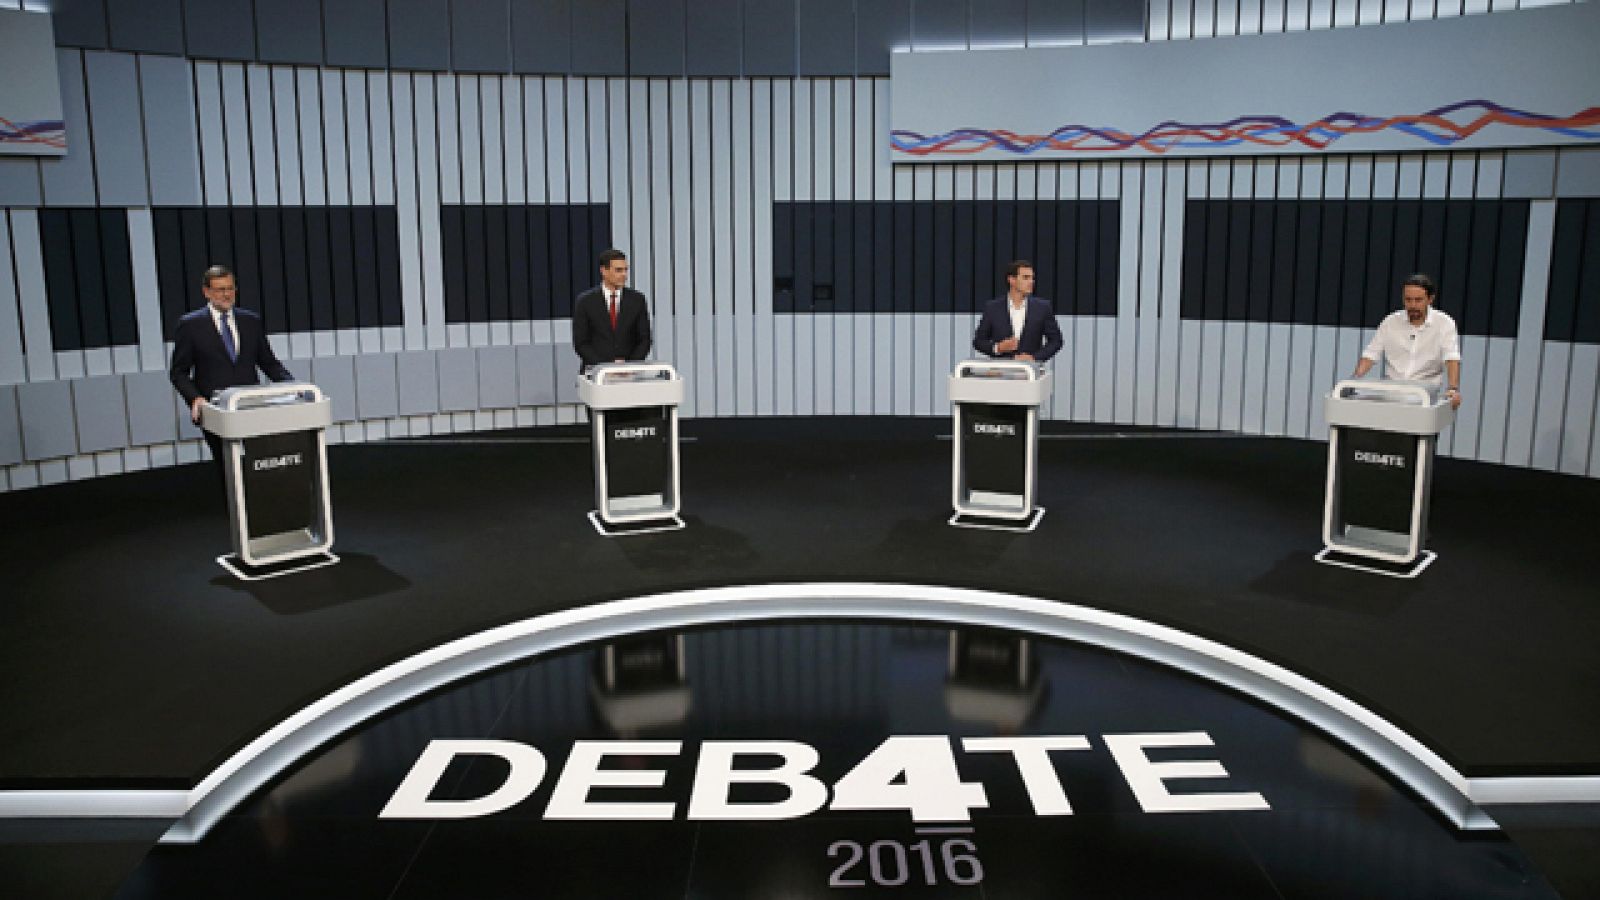 Los candidatos inician su intervención en el debate postulándose sobre posibles pactos